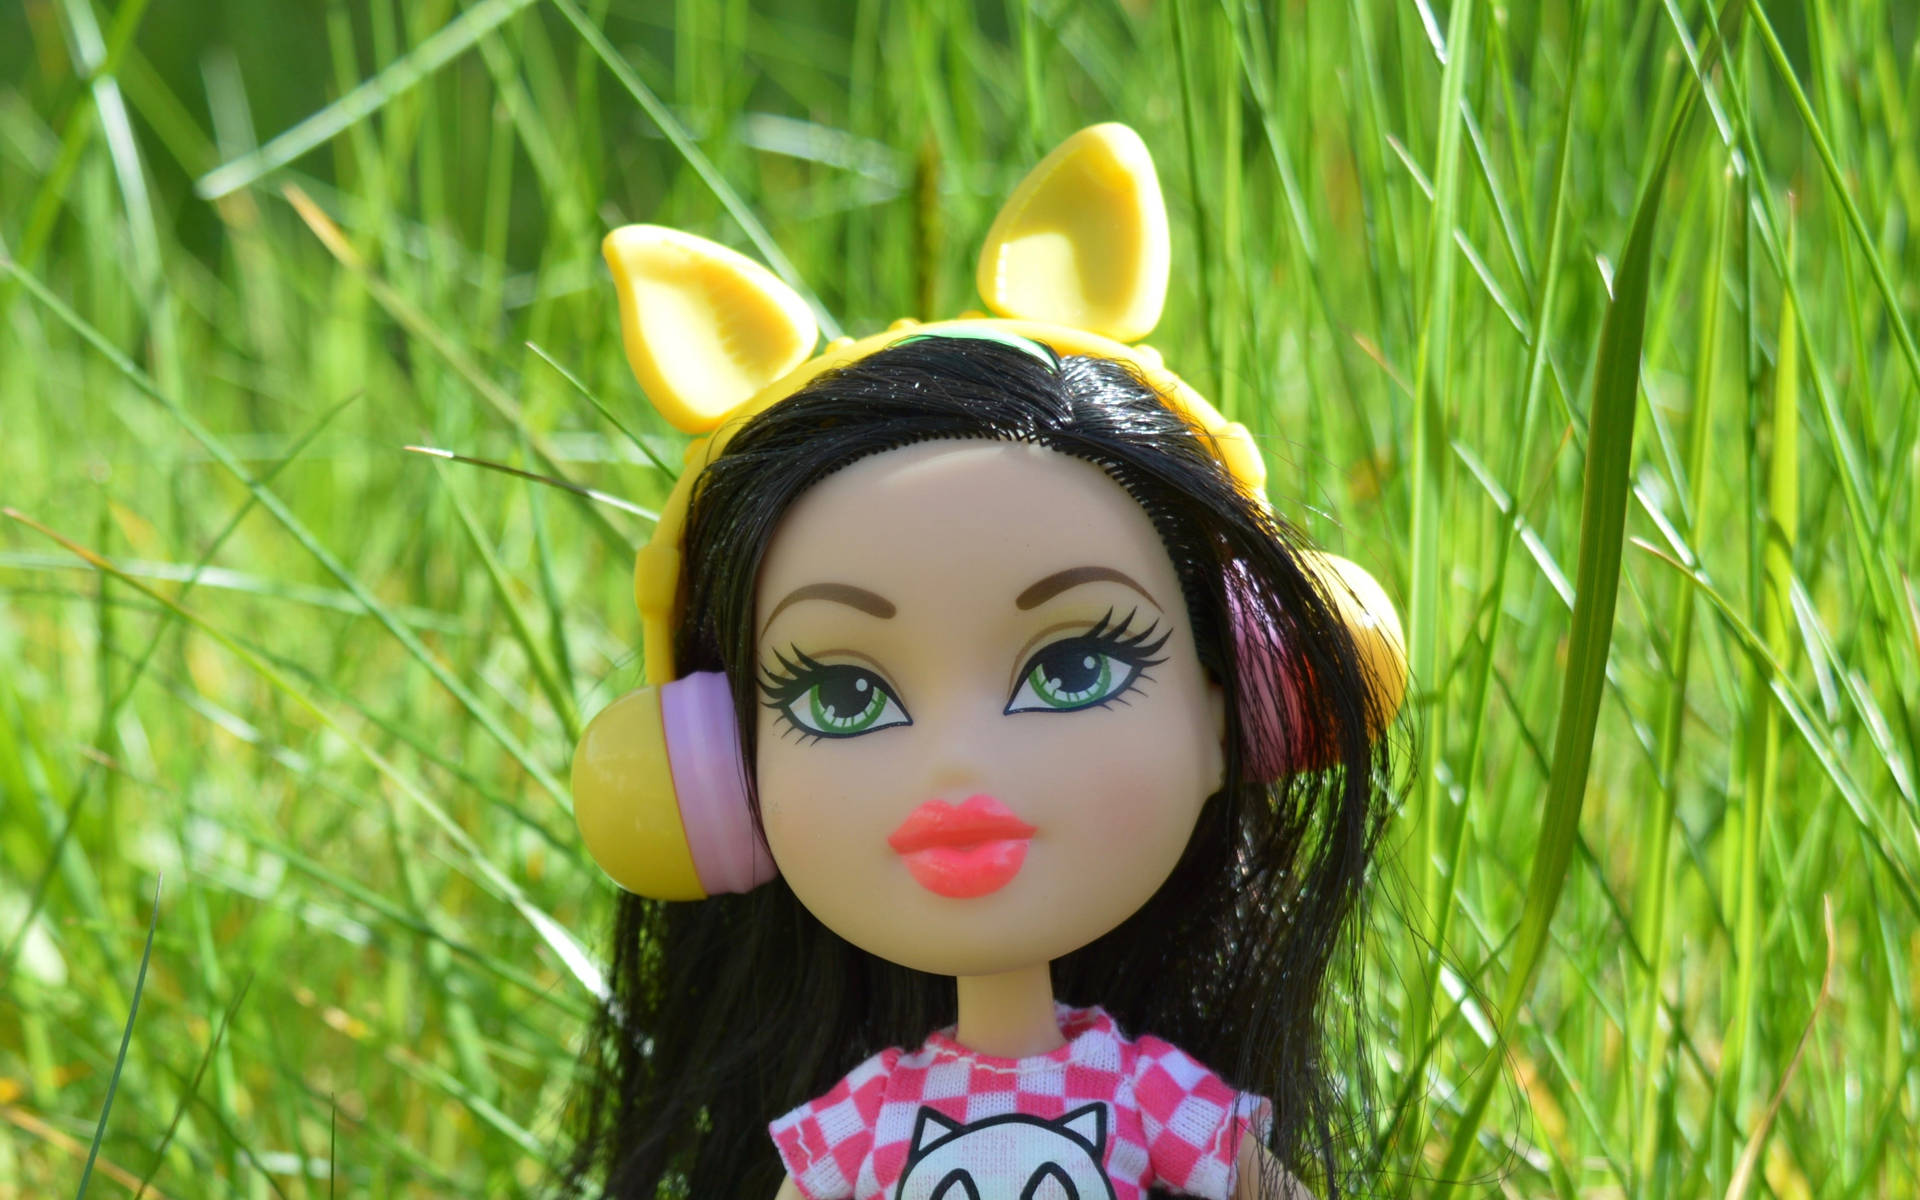 Bratz Toy Doll At Garden